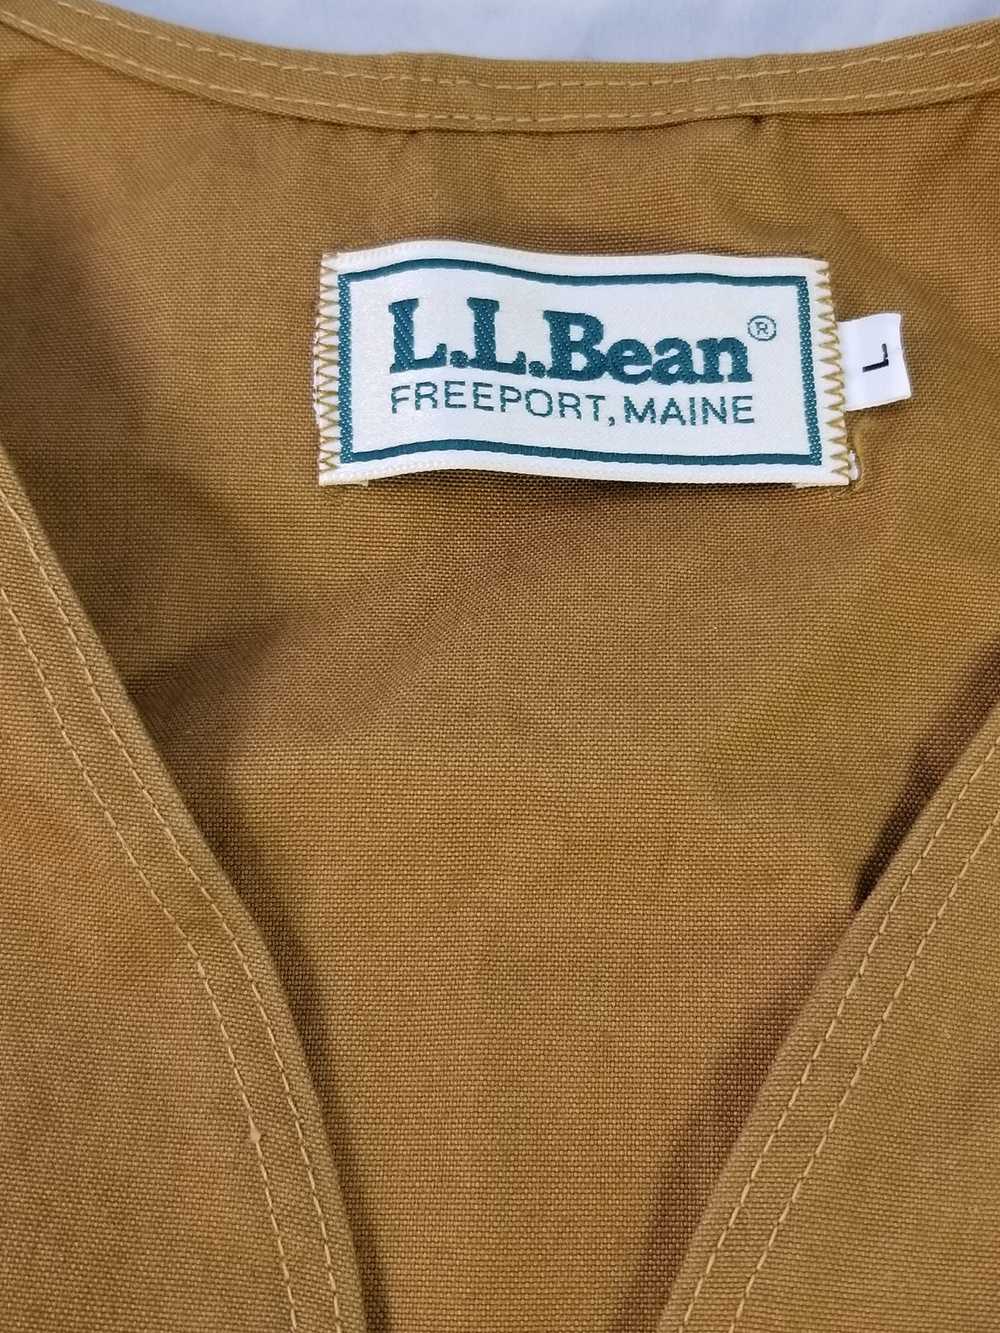 L.L. Bean FISHING HUNTING VEST - image 6